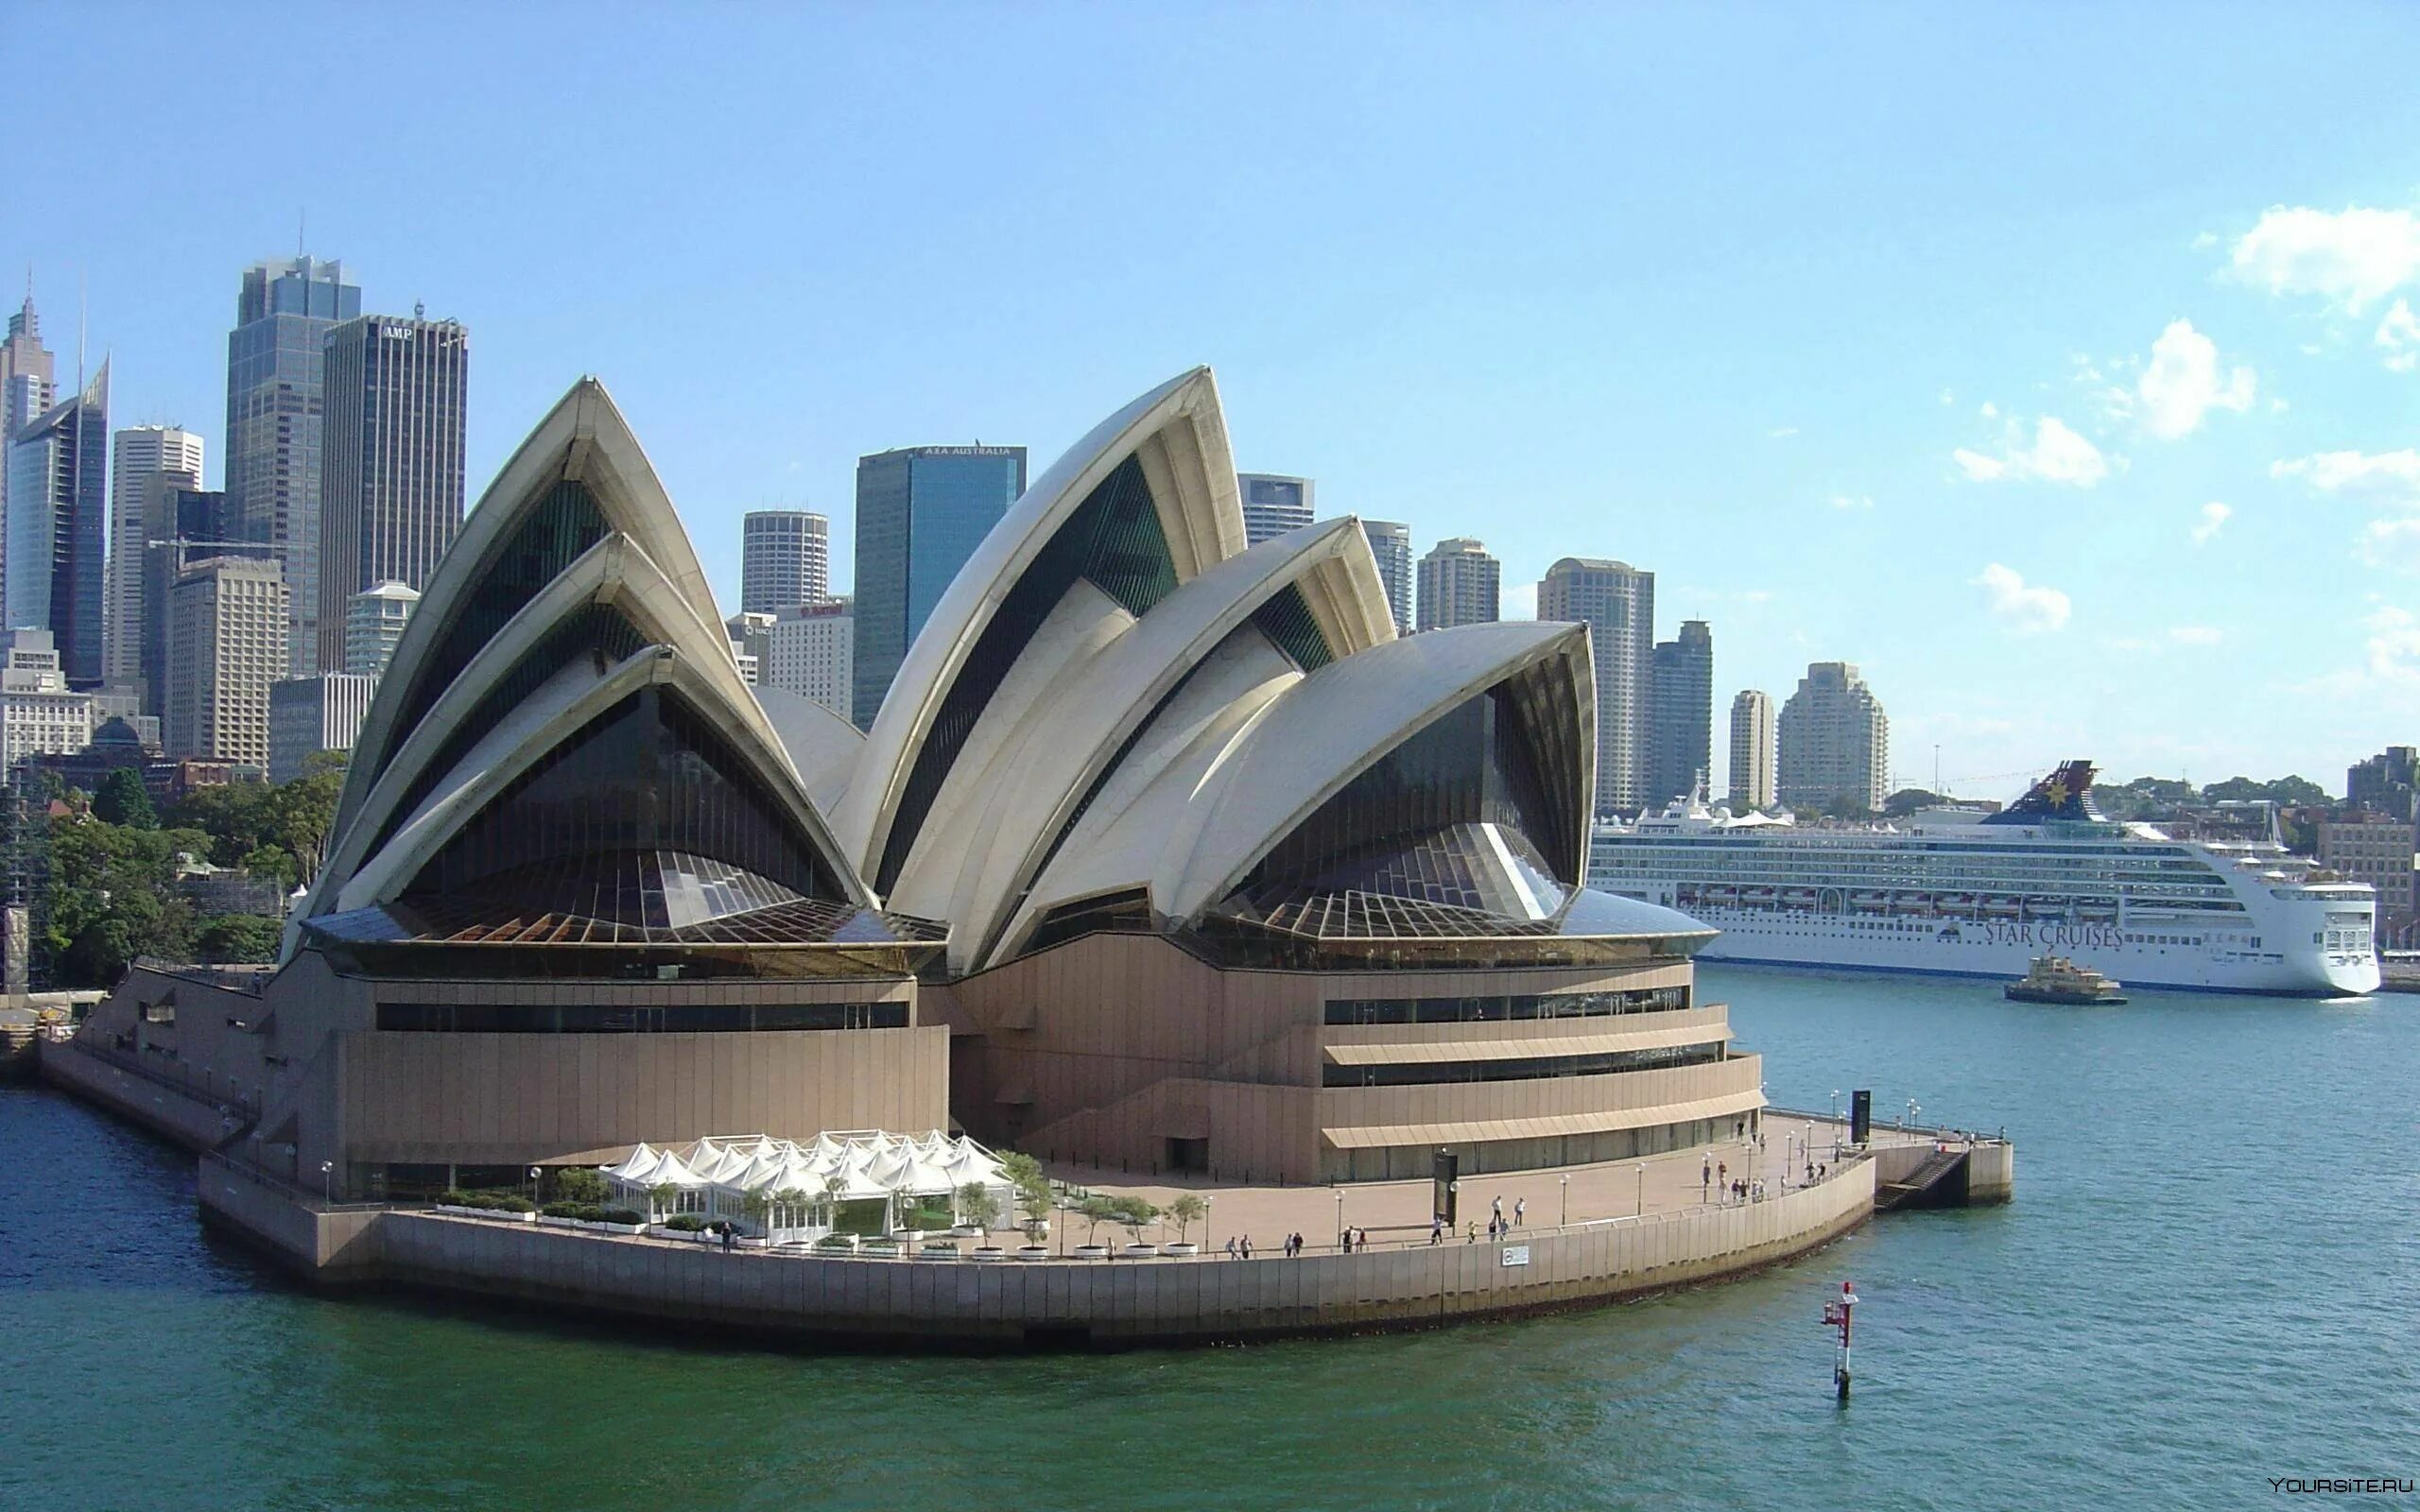 Сиднейский оперный театр Австралия. Сиднейский оперный театр- г.Сидней (Австралия). Оперный театр в Австралии. Опера Хаус Сидней Австралия. Достопримечательности каждых стран